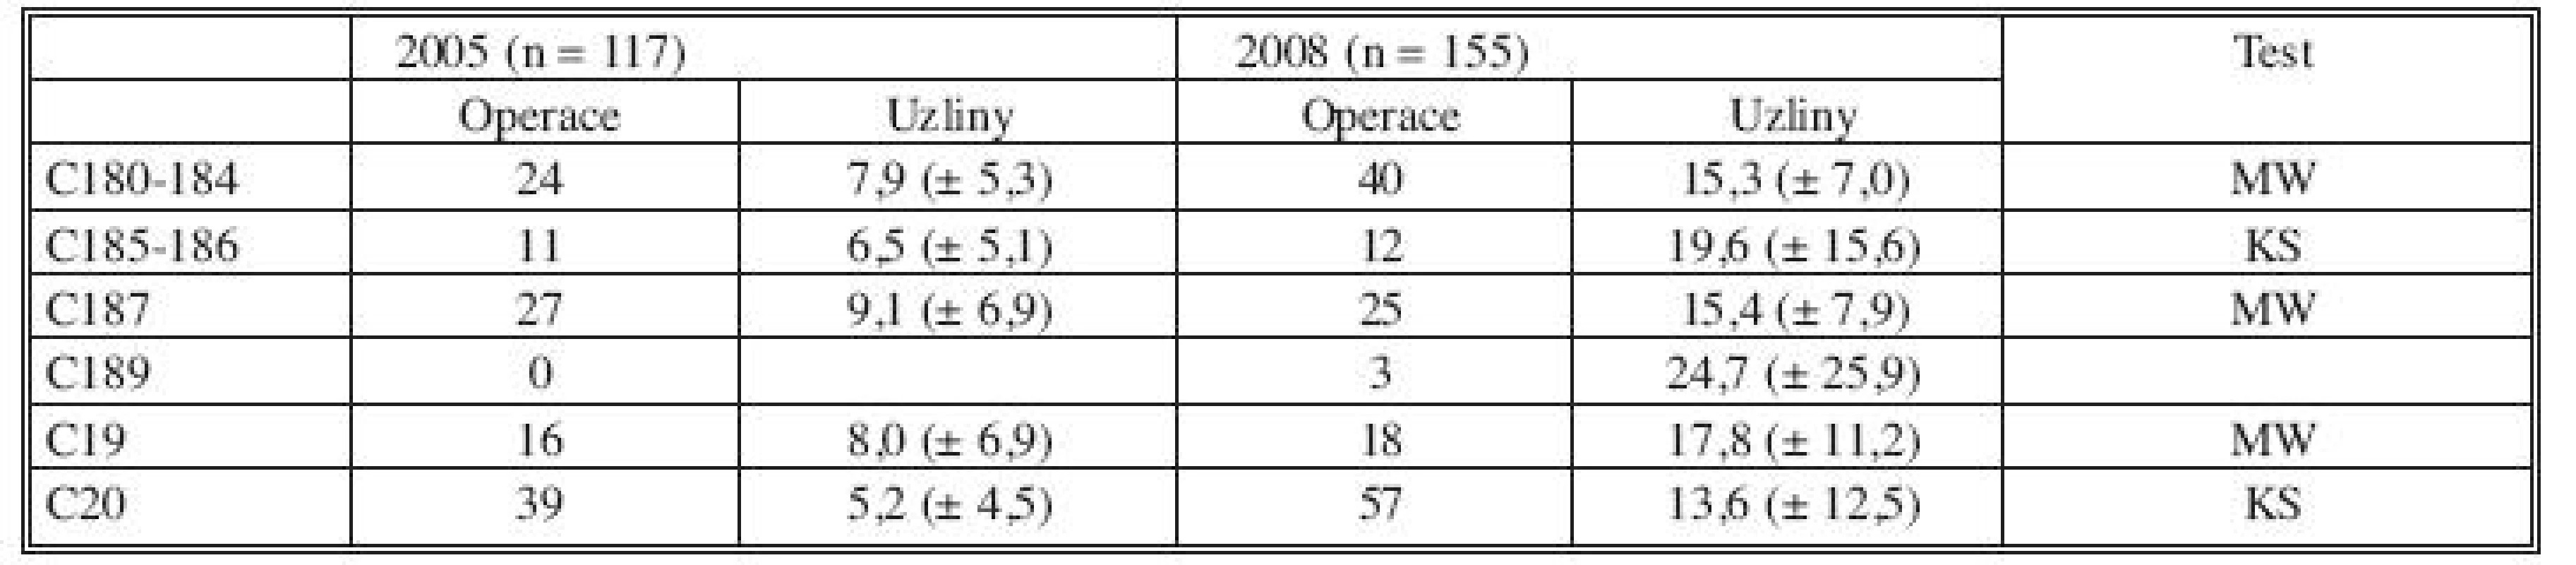 Počet operací a průměrný počet odstraněných uzlin v letech 2005 a 2008 podle jednotlivých typů resekcí
Tab. 2. Number of procedures and number of lymph nodes in the specimens in 2005 and 2008 in the various types of resections